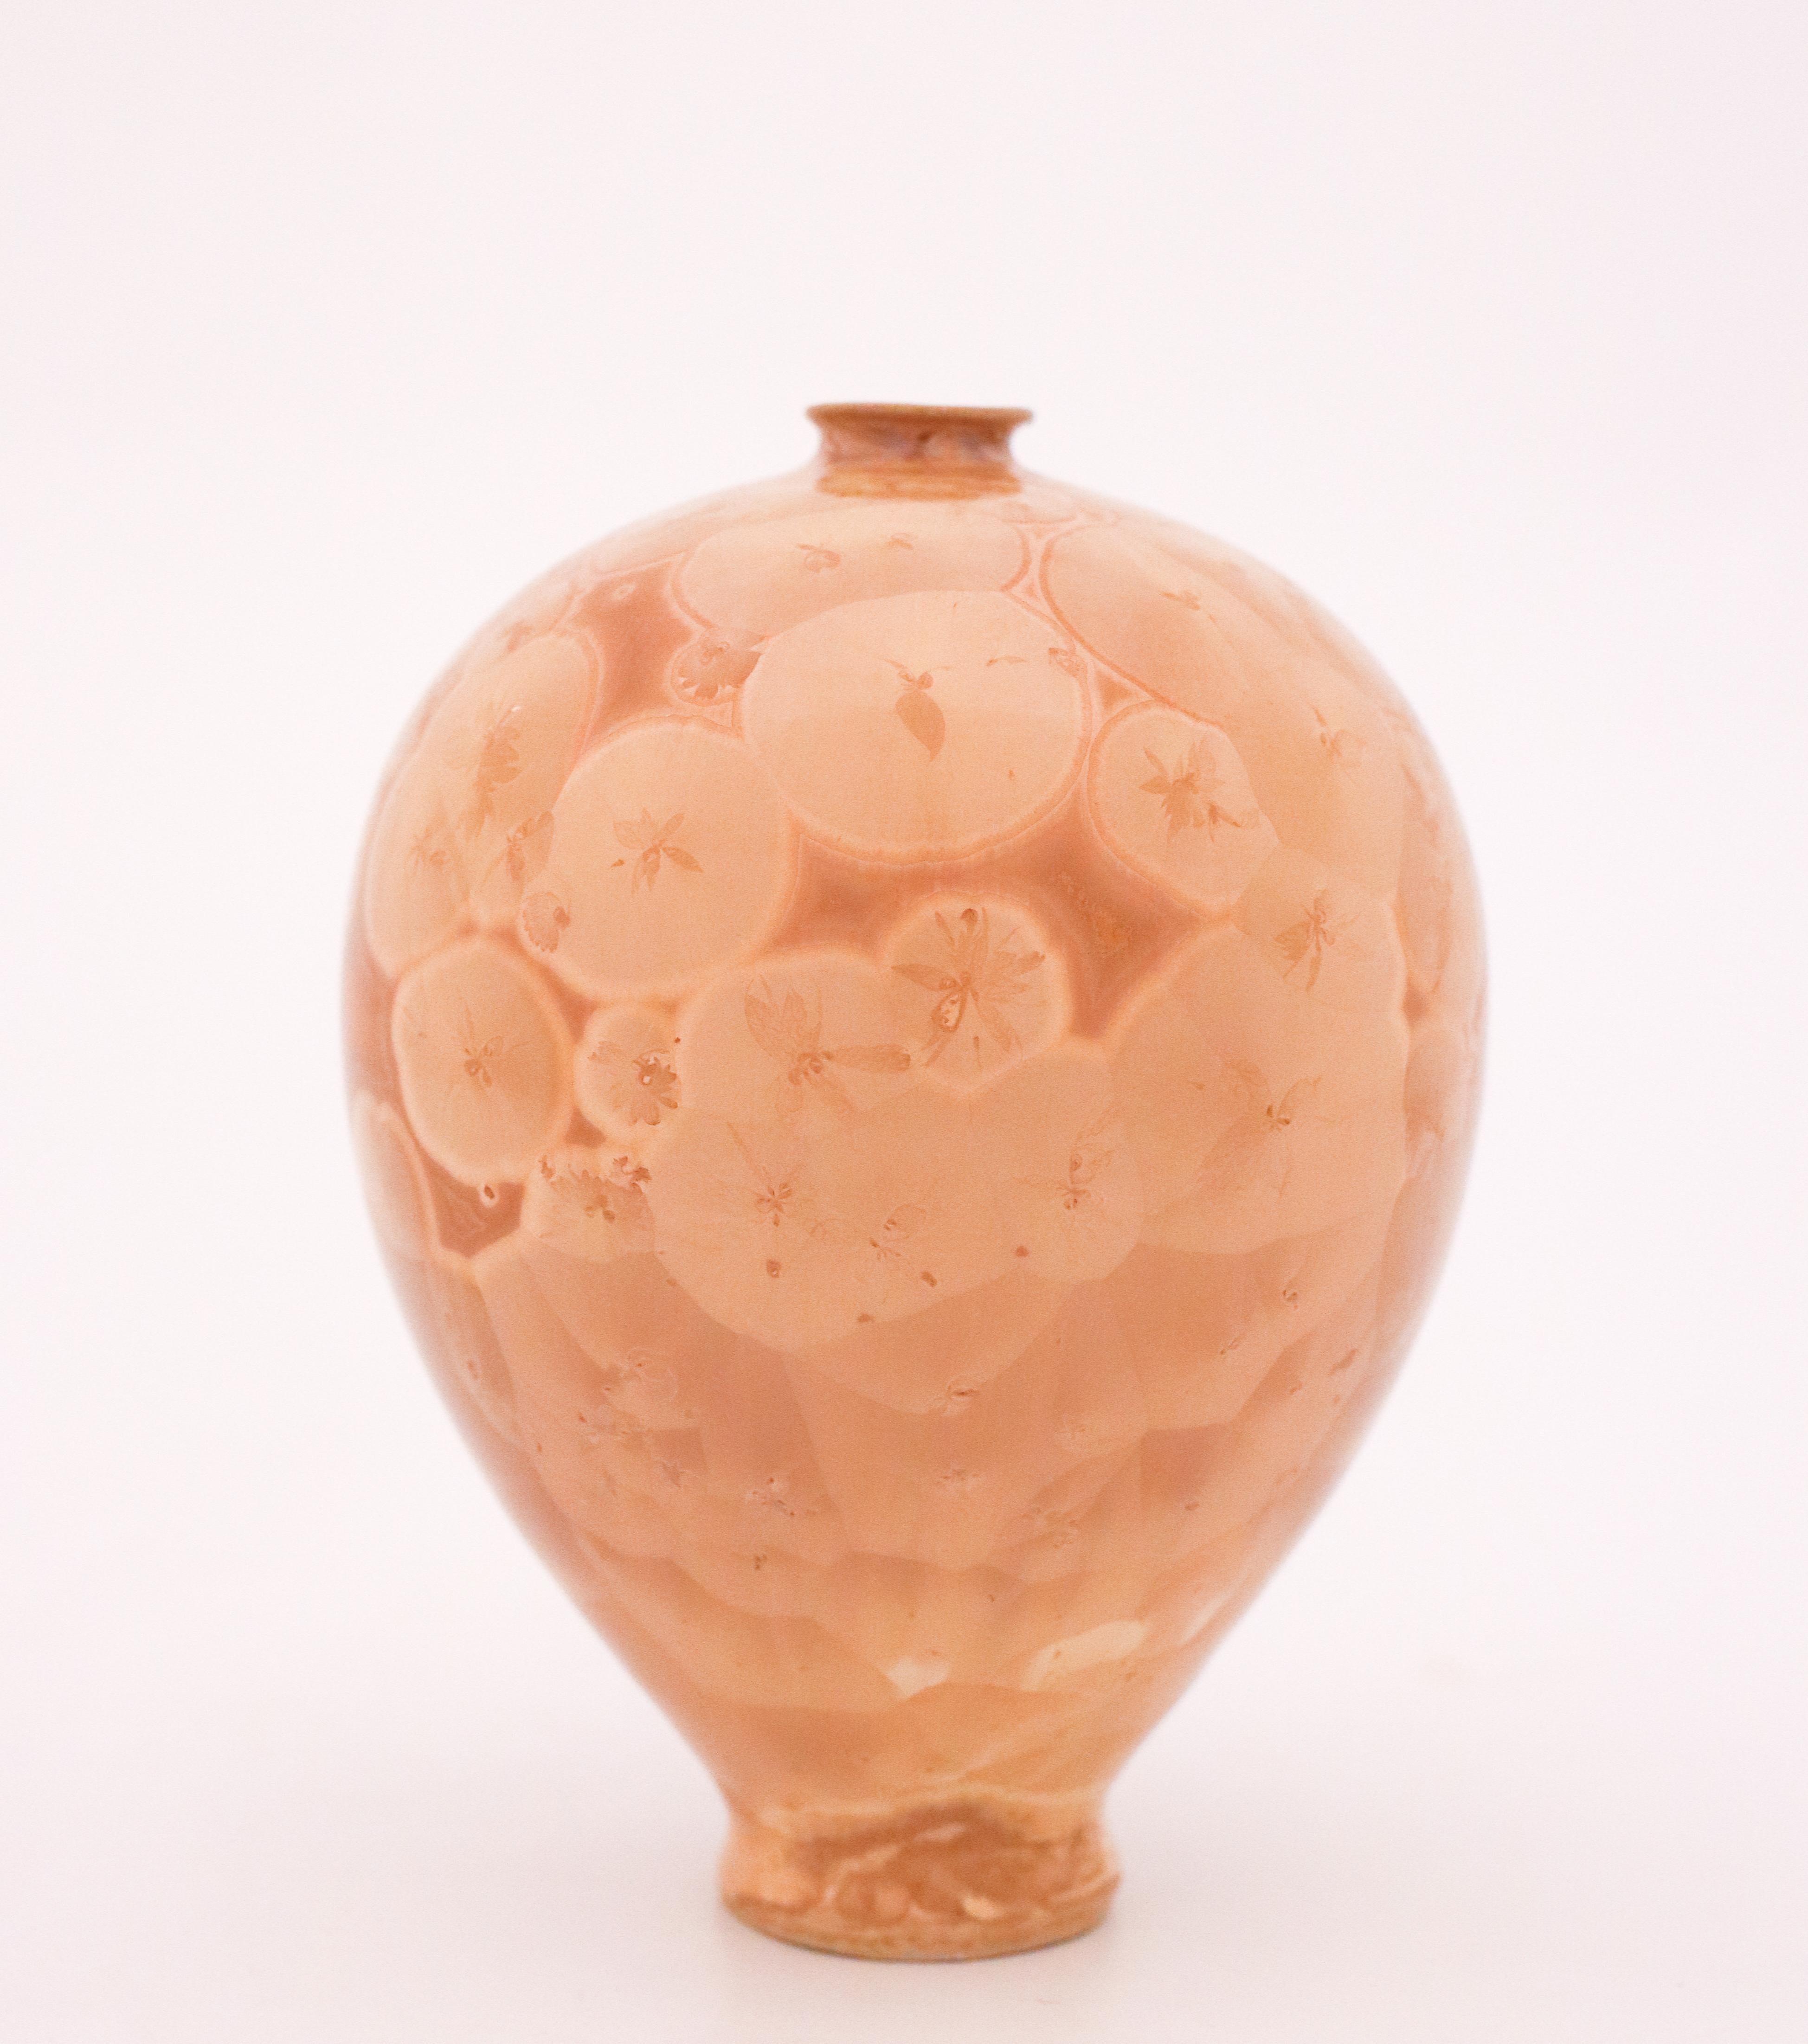 Isak Isaksson Vase, Beige Crystalline Glaze, Contemporary Swedish Ceramicist 1